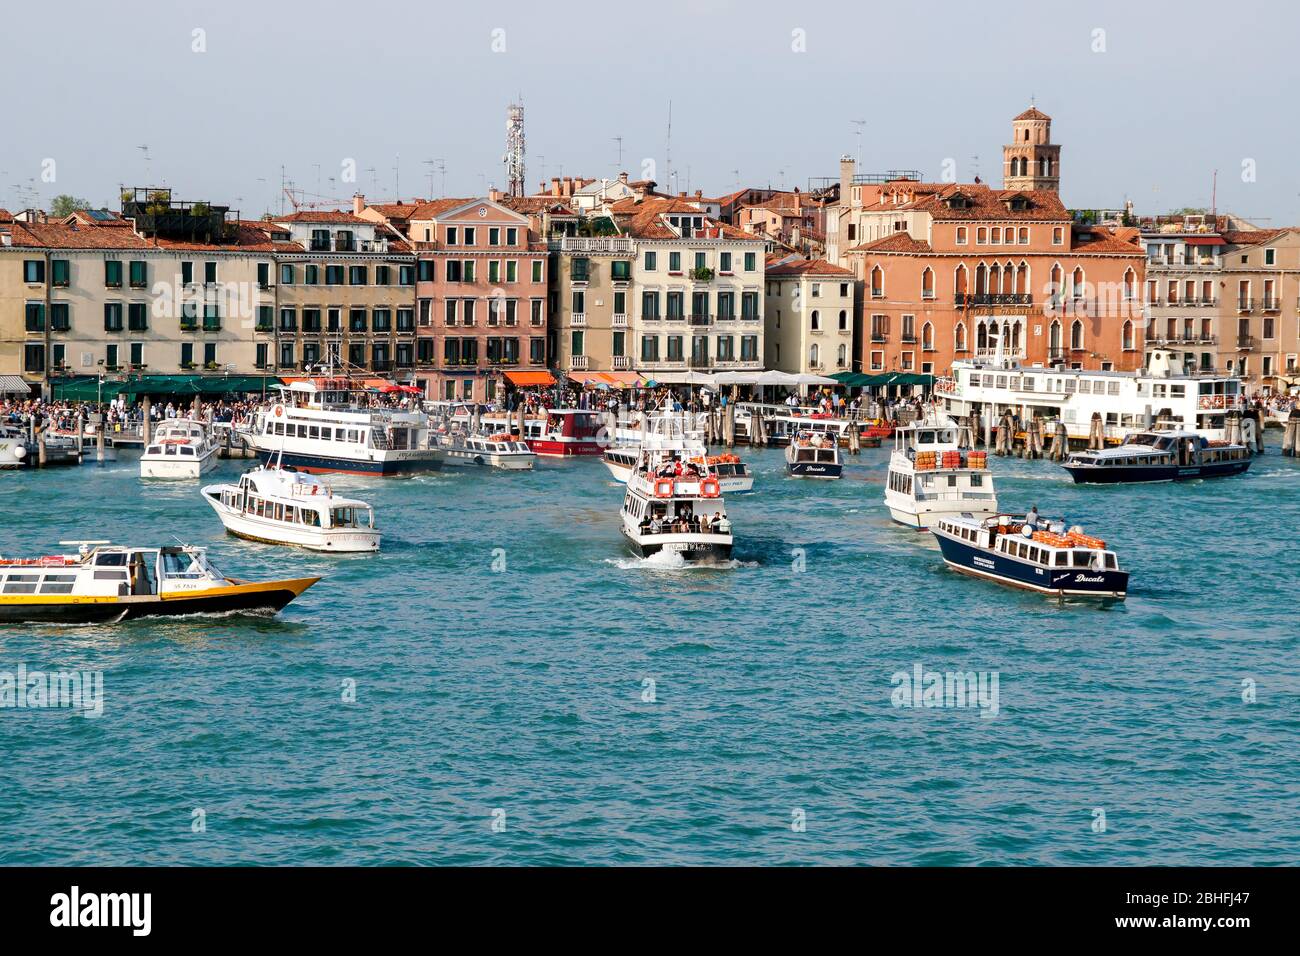 Transporte público y barcos turísticos esperando atracar en el puerto deportivo público. Tarde. Venecia Italia Foto de stock